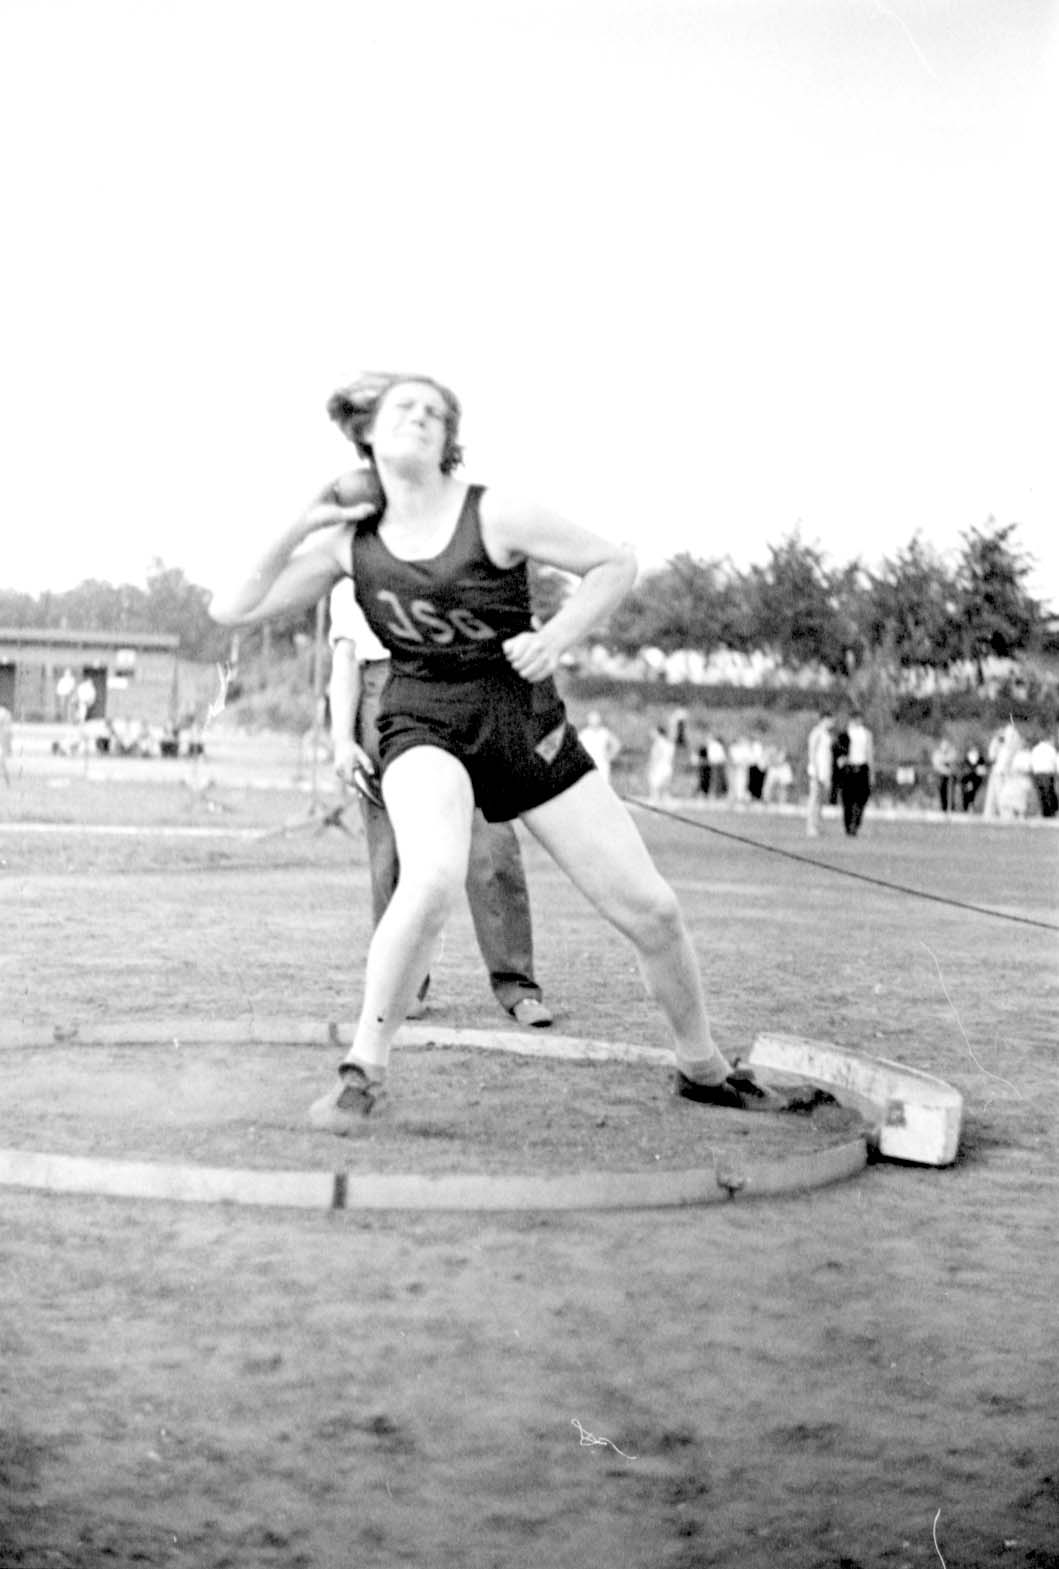 ברלין, גרמניה, 4 ביולי 1937, אינגבורג מלו (Ingeborg Mello), המנצחת בתחרות הדיפת כדור ברזל בטורניר ספורט יהודי